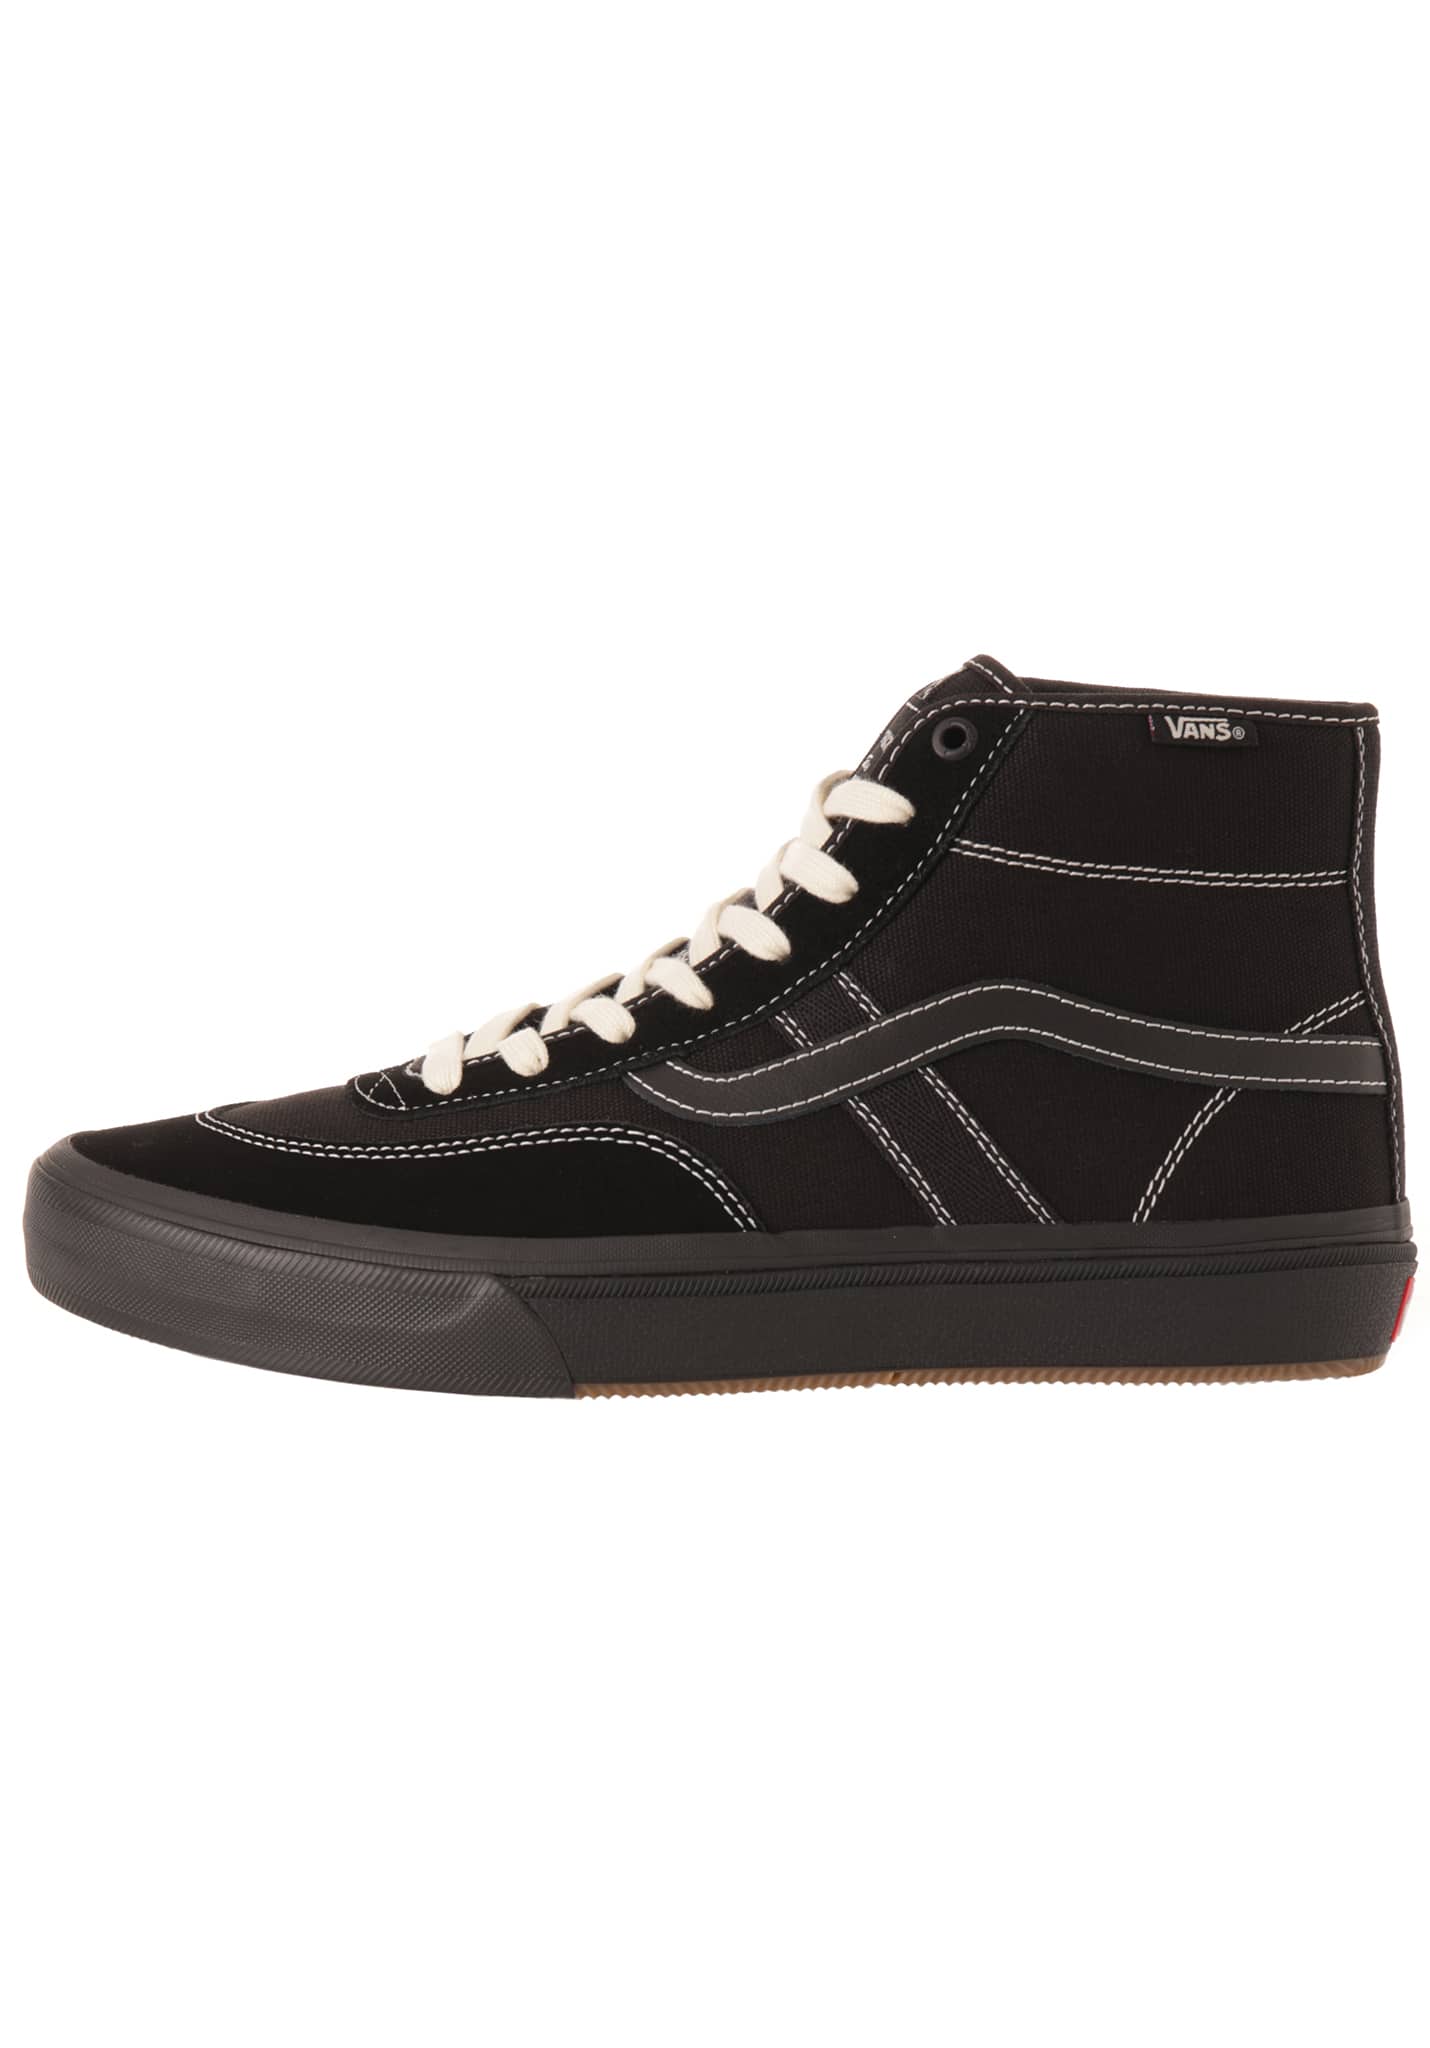 Vans Crockett High Pro Sneaker black/black 42,5